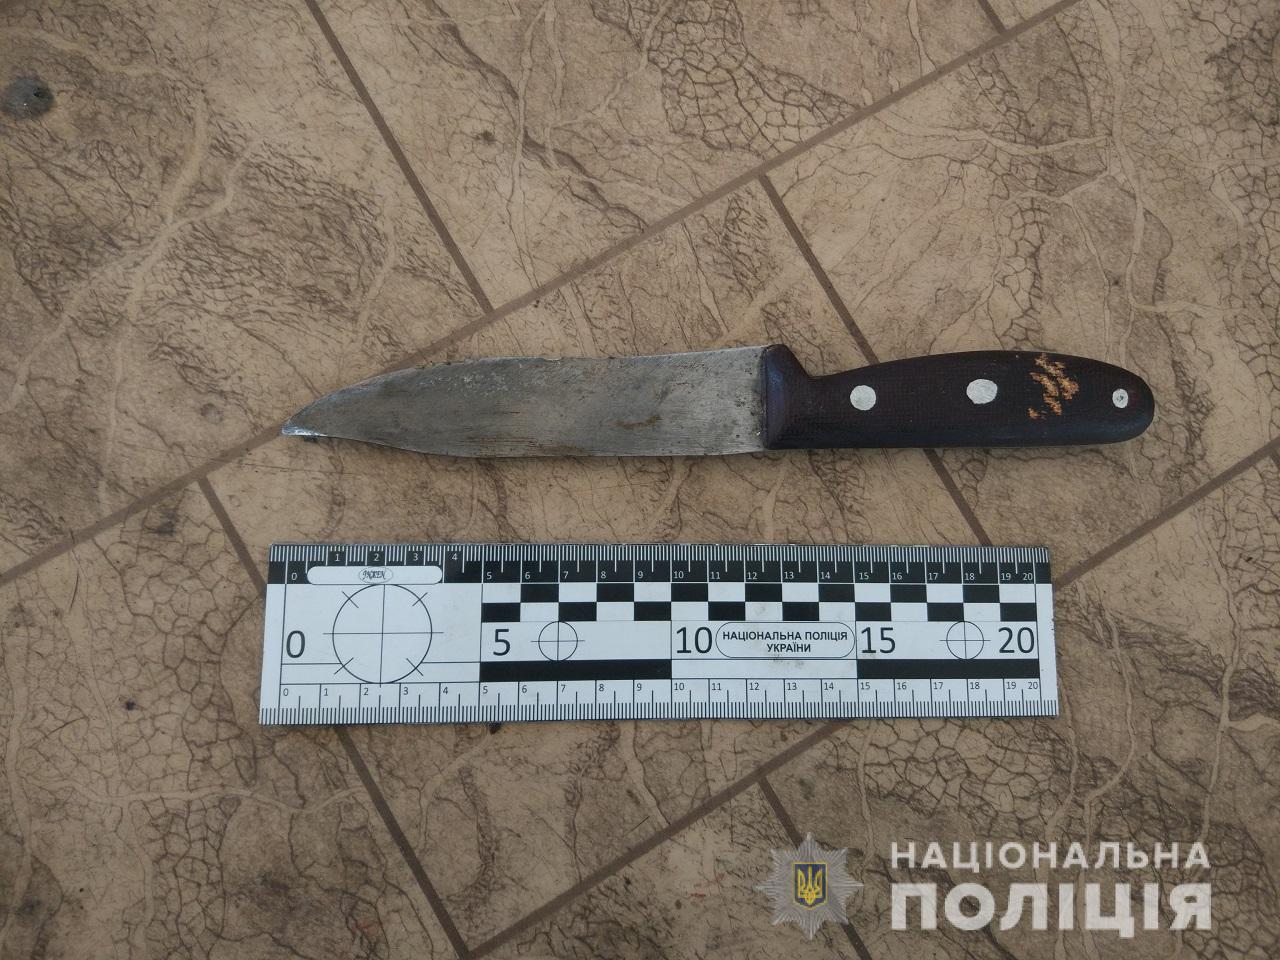 У гуртожитку в Ужгороді під час конфлікту чоловік подряпав сусіду ножем грудну клітину